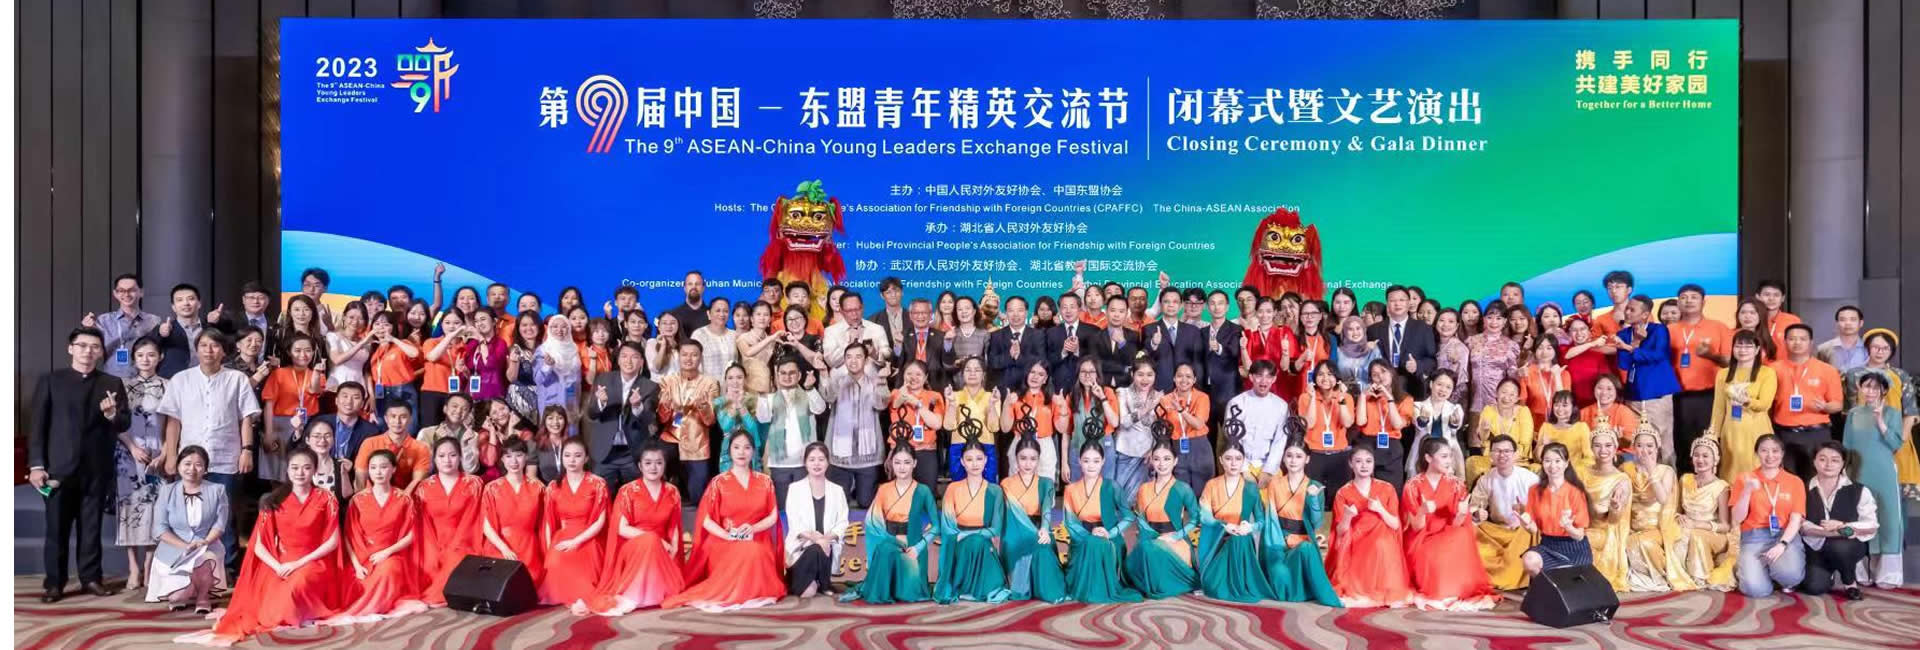 第九届中国-东盟青年精英交流节在湖北举行